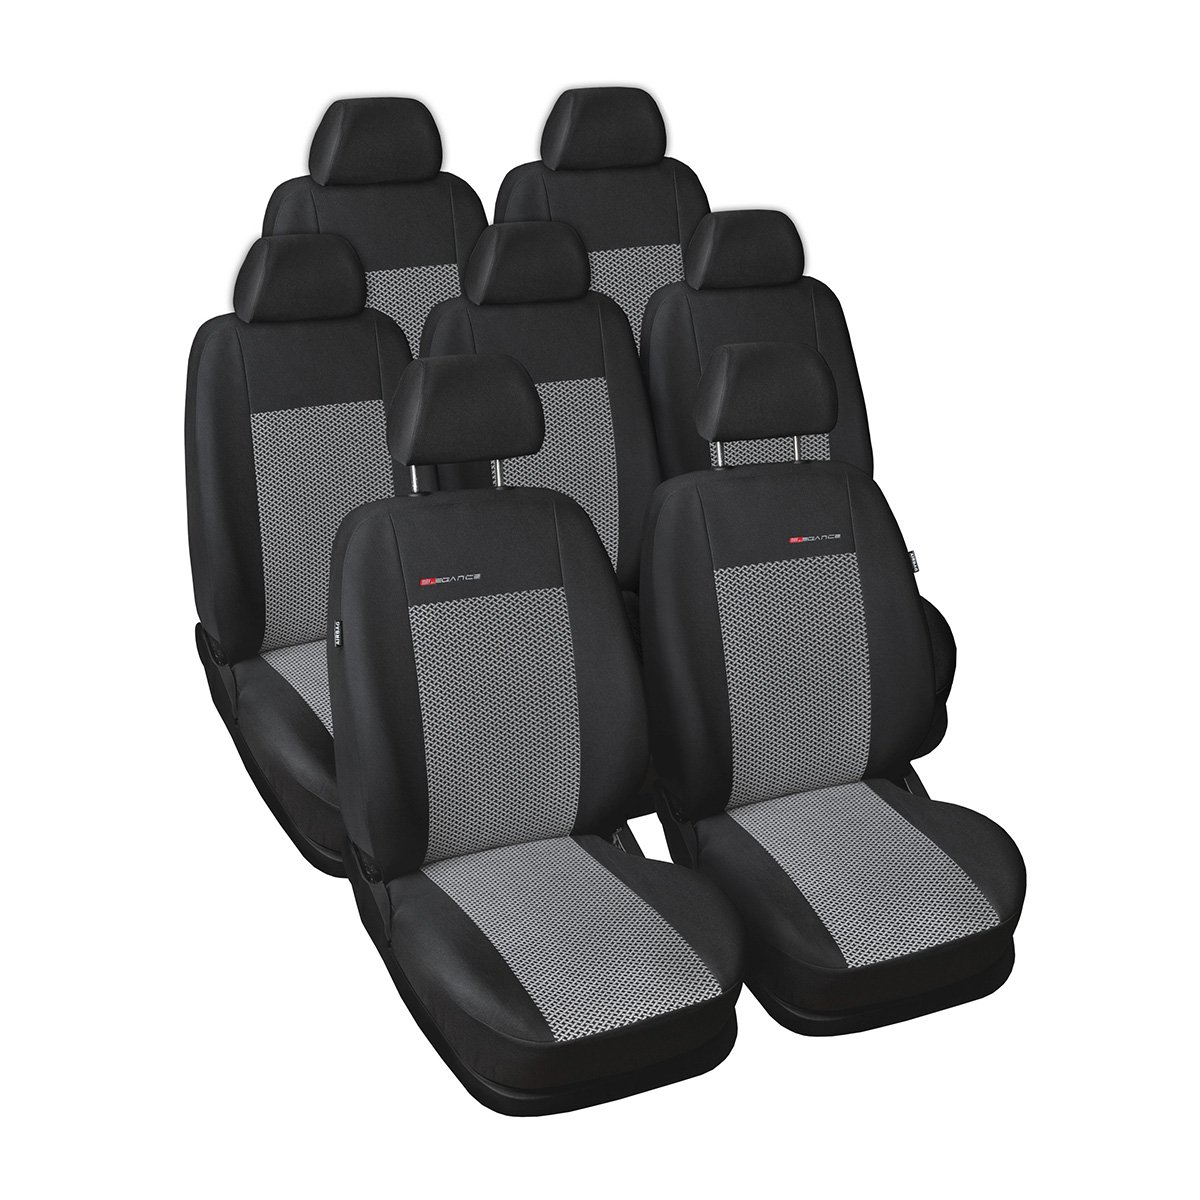 Mossa - Maßgeschneiderte Sitzbezüge Auto kompatibel mit Seat Alhambra II Van (2010-2020) - ohne Kindersitze in den hinteren Sitzen - Autositzbezüge Schonbezüge für Autositze - E2 von Mossa